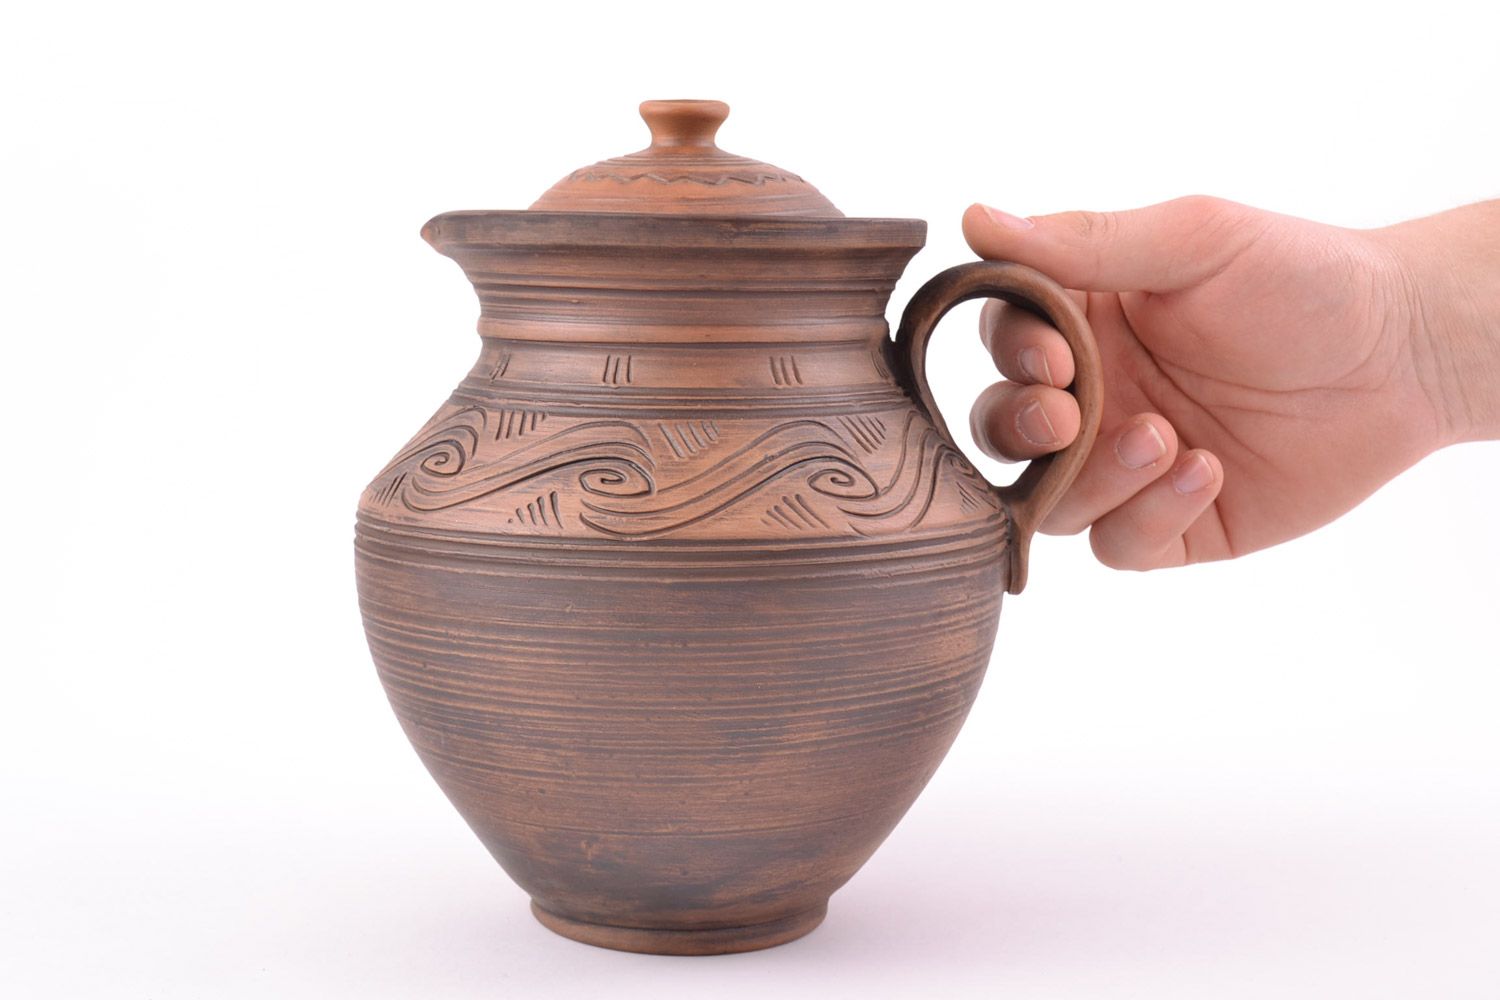 Handmade Keramik Krug aus Ton mit Muster in Braun schön ethnisch 2 Liter foto 2